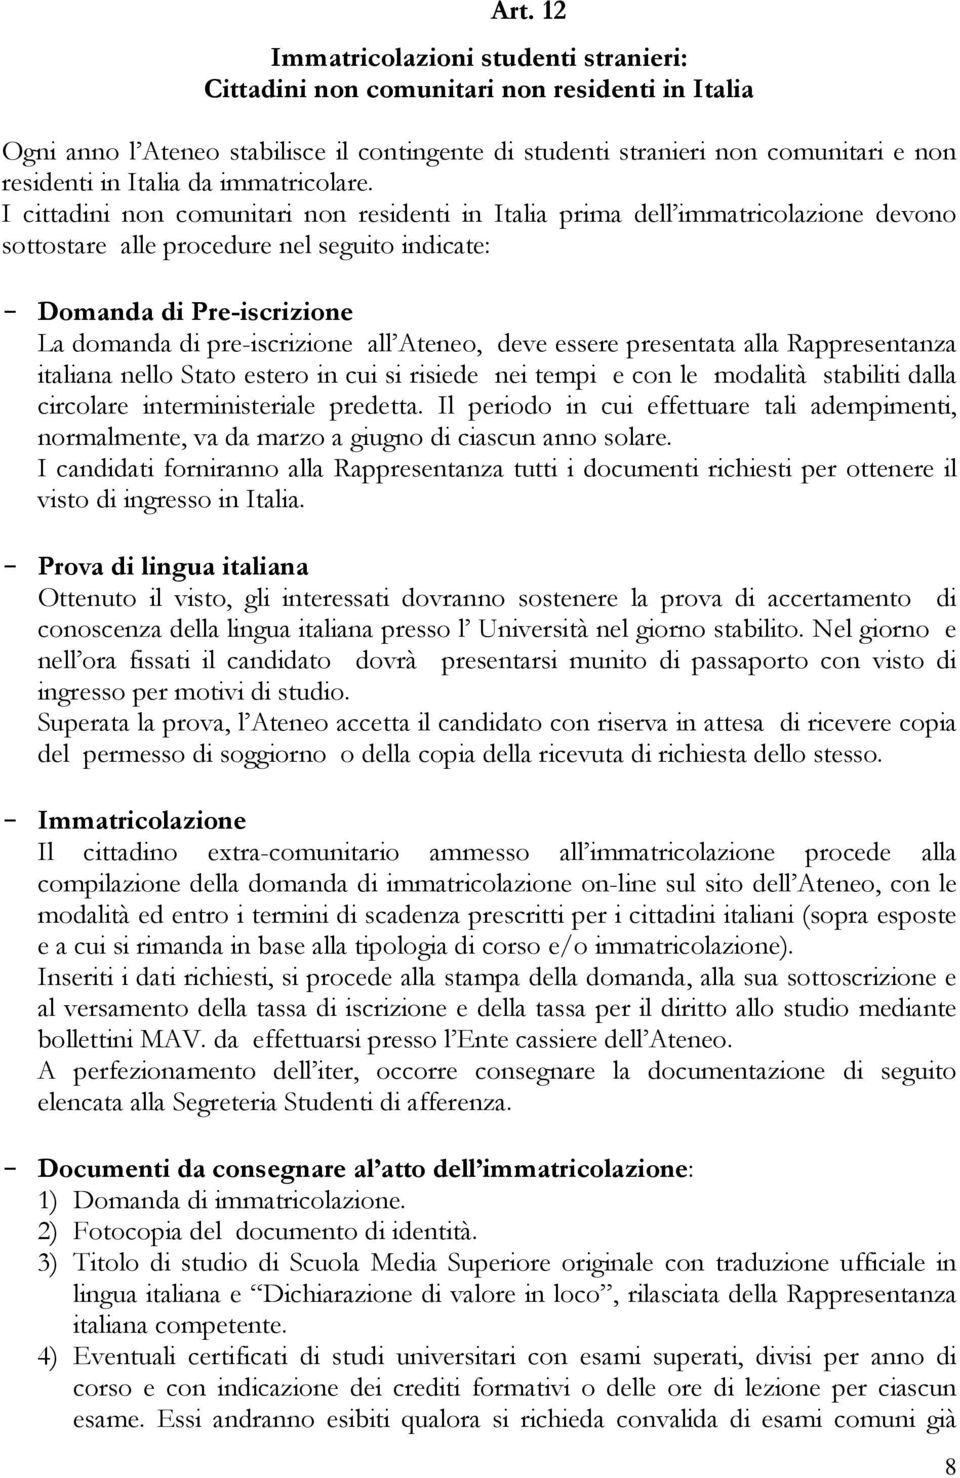 I cittadini non comunitari non residenti in Italia prima dell immatricolazione devono sottostare alle procedure nel seguito indicate: - Domanda di Pre-iscrizione La domanda di pre-iscrizione all